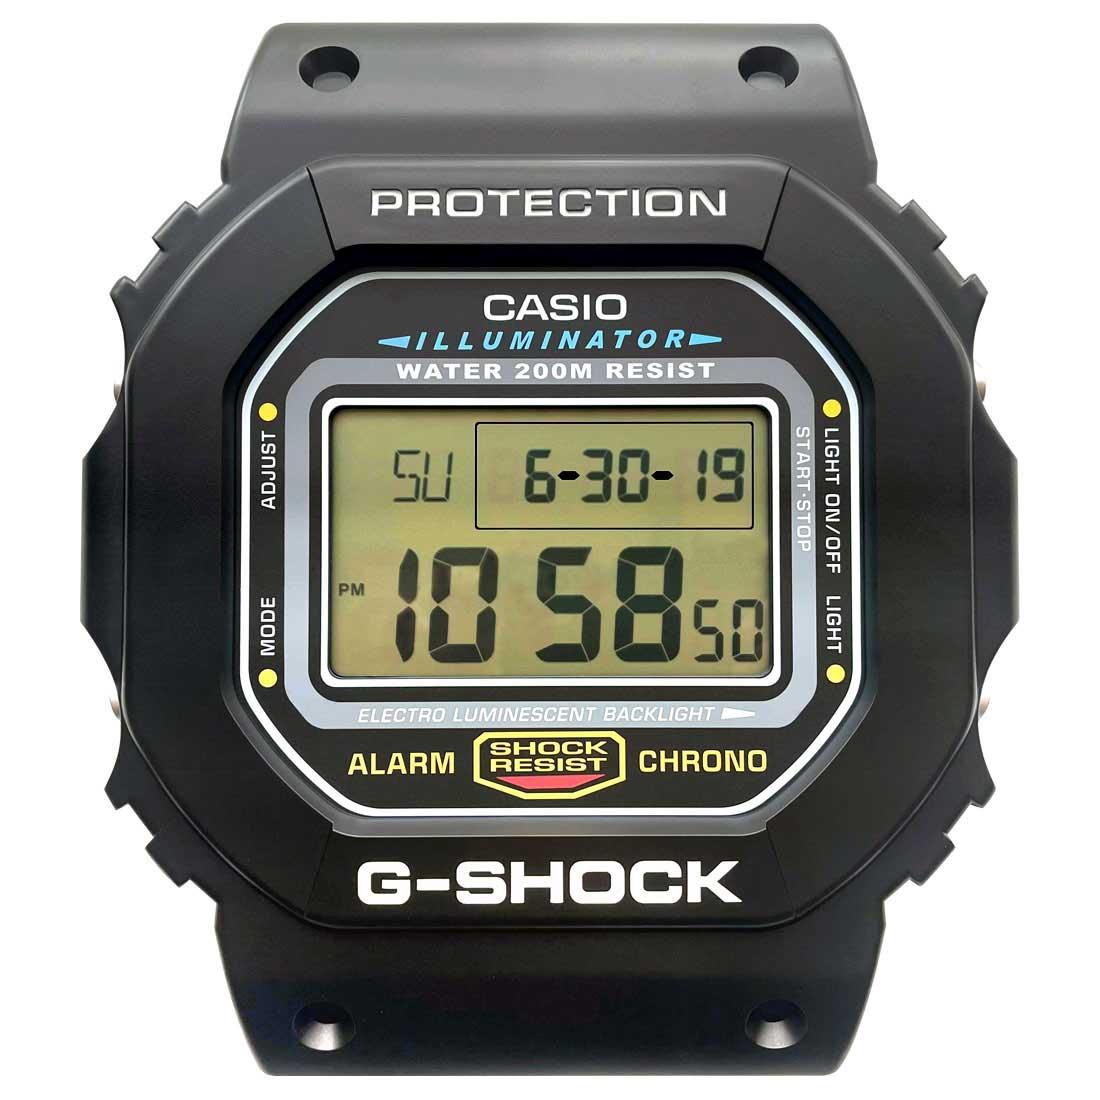 425 USD] Casio G-Shock Gshock Wall Clock DW-5600